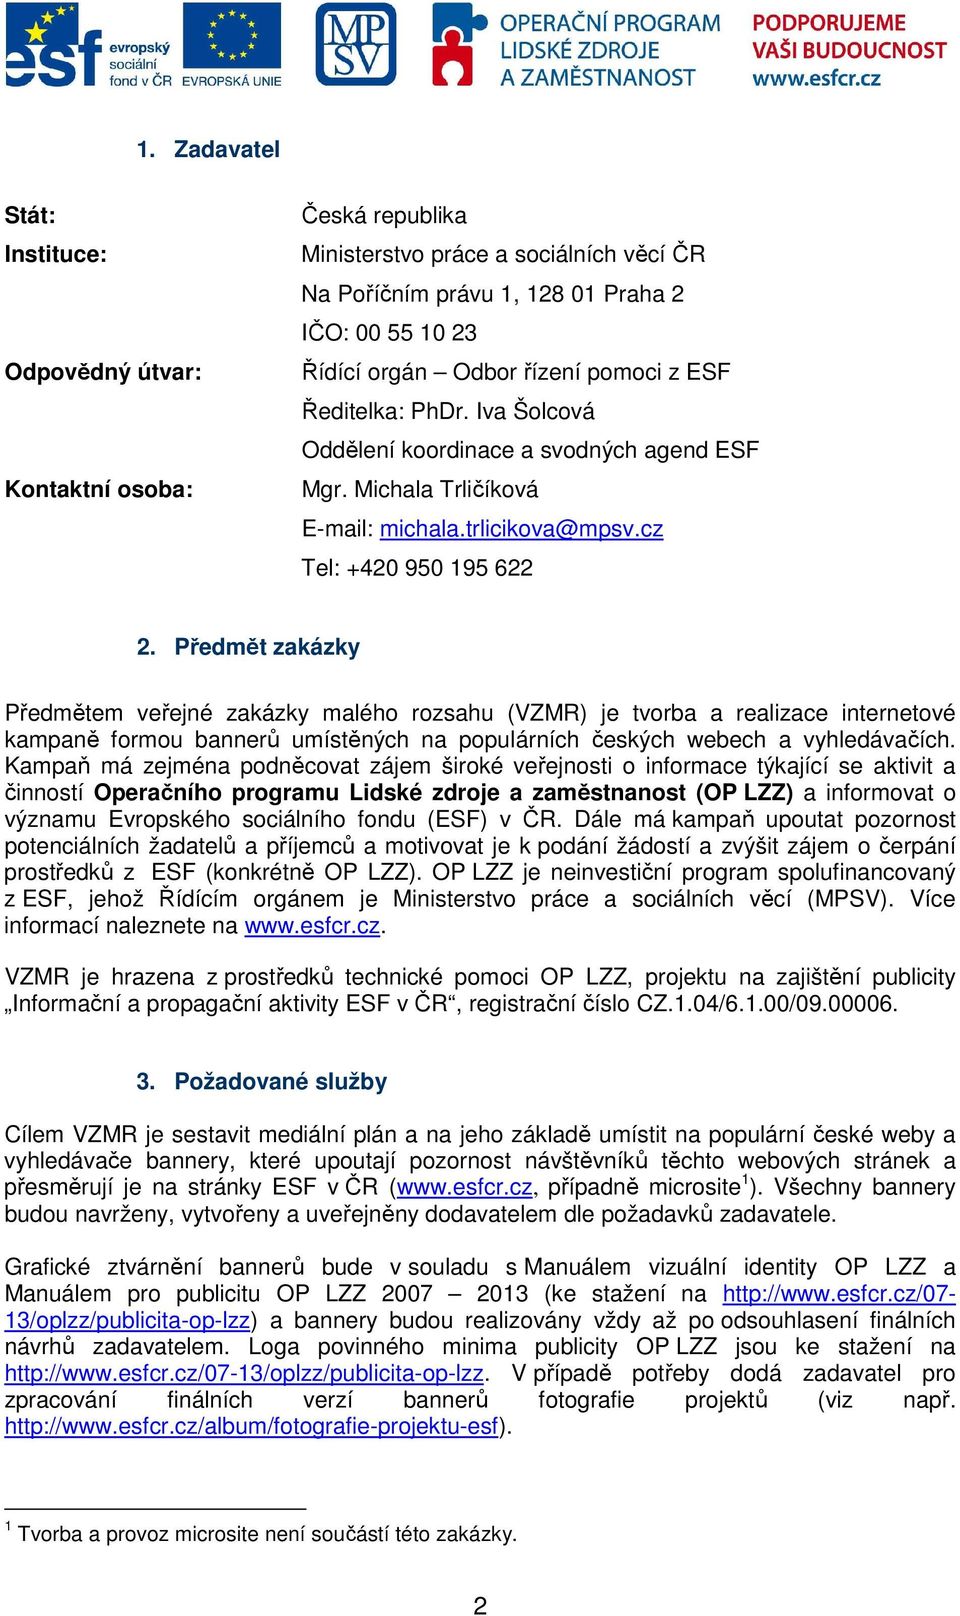 Předmět zakázky Předmětem veřejné zakázky malého rozsahu (VZMR) je tvorba a realizace internetové kampaně formou bannerů umístěných na populárních českých webech a vyhledávačích.